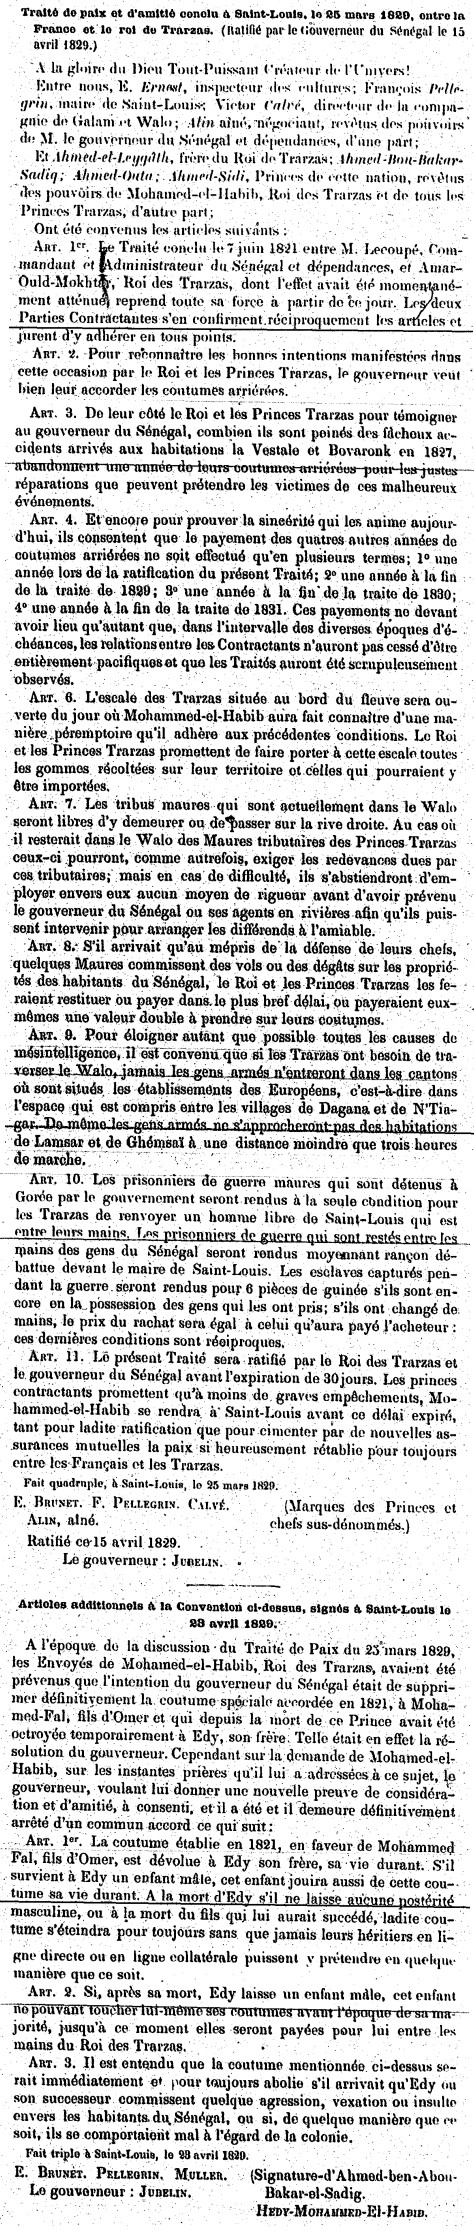 Traité de paix et d'amitié conclu à Saint-Louis le 25 mars 1829 entre la France et le roi de Trarza (ratifié par le Gouverneur du Sénégal le 15 avril 1829 et les articles additionnels signée à Saint-Louis le 23 avril 1829